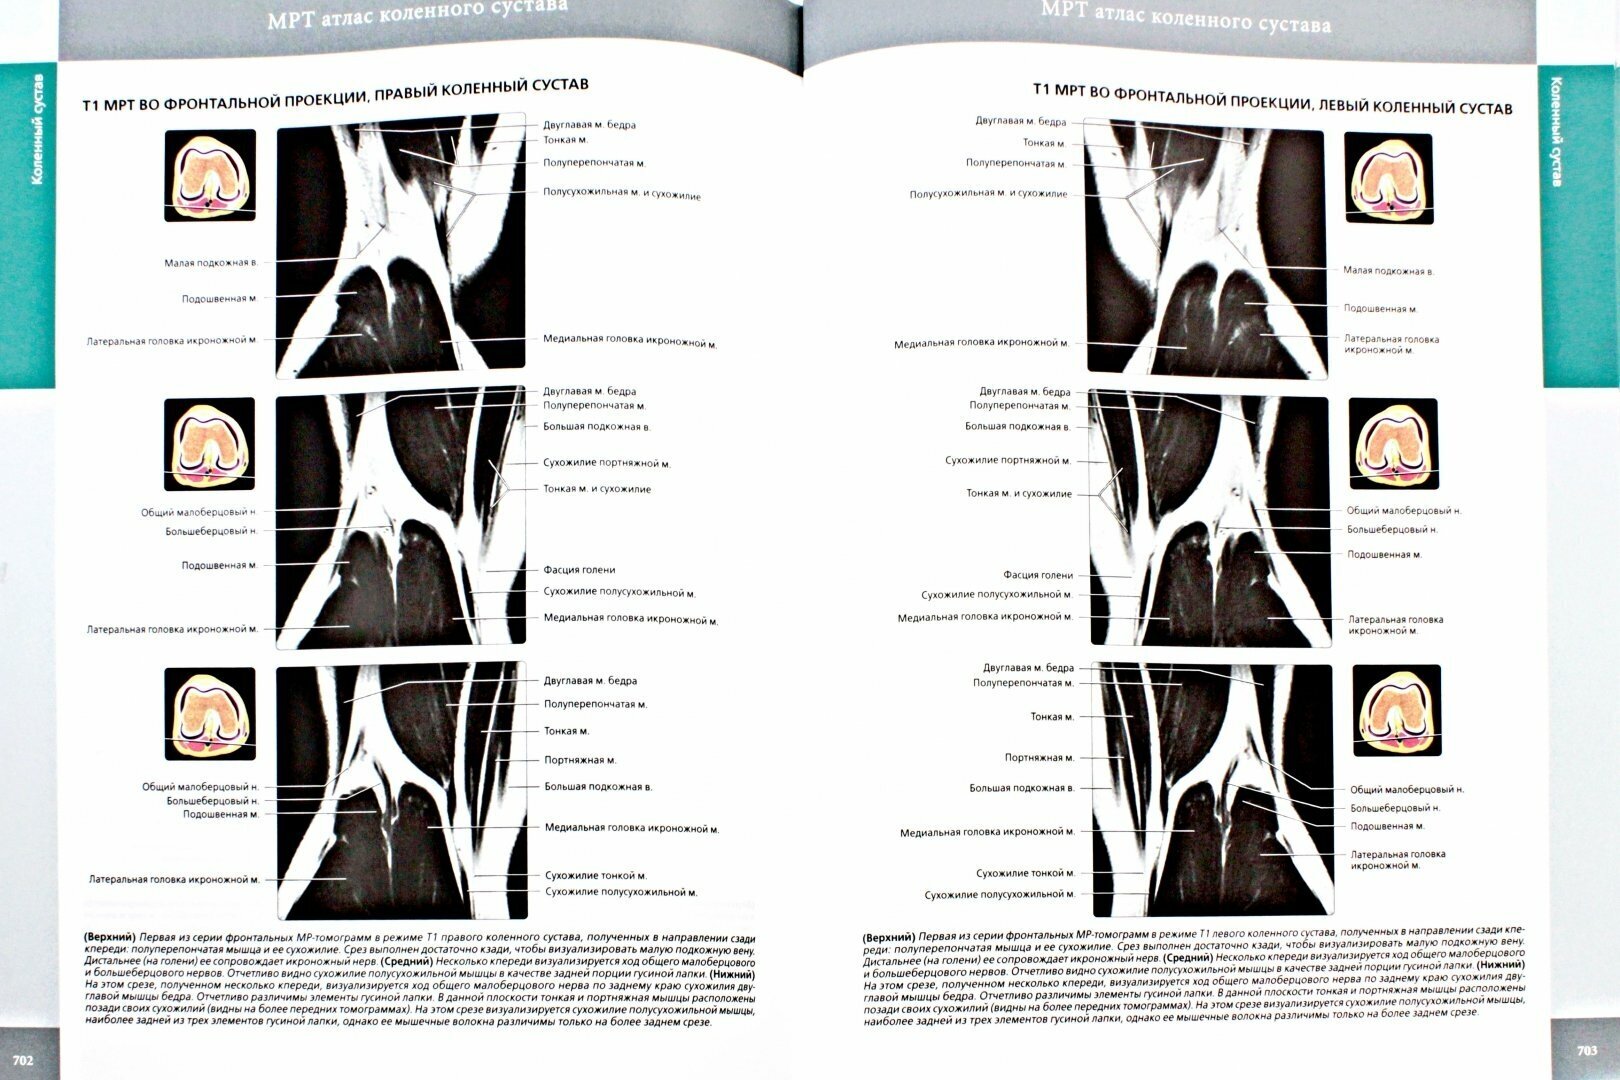 Лучевая анатомия. Кости, мышцы, связки - фото №2